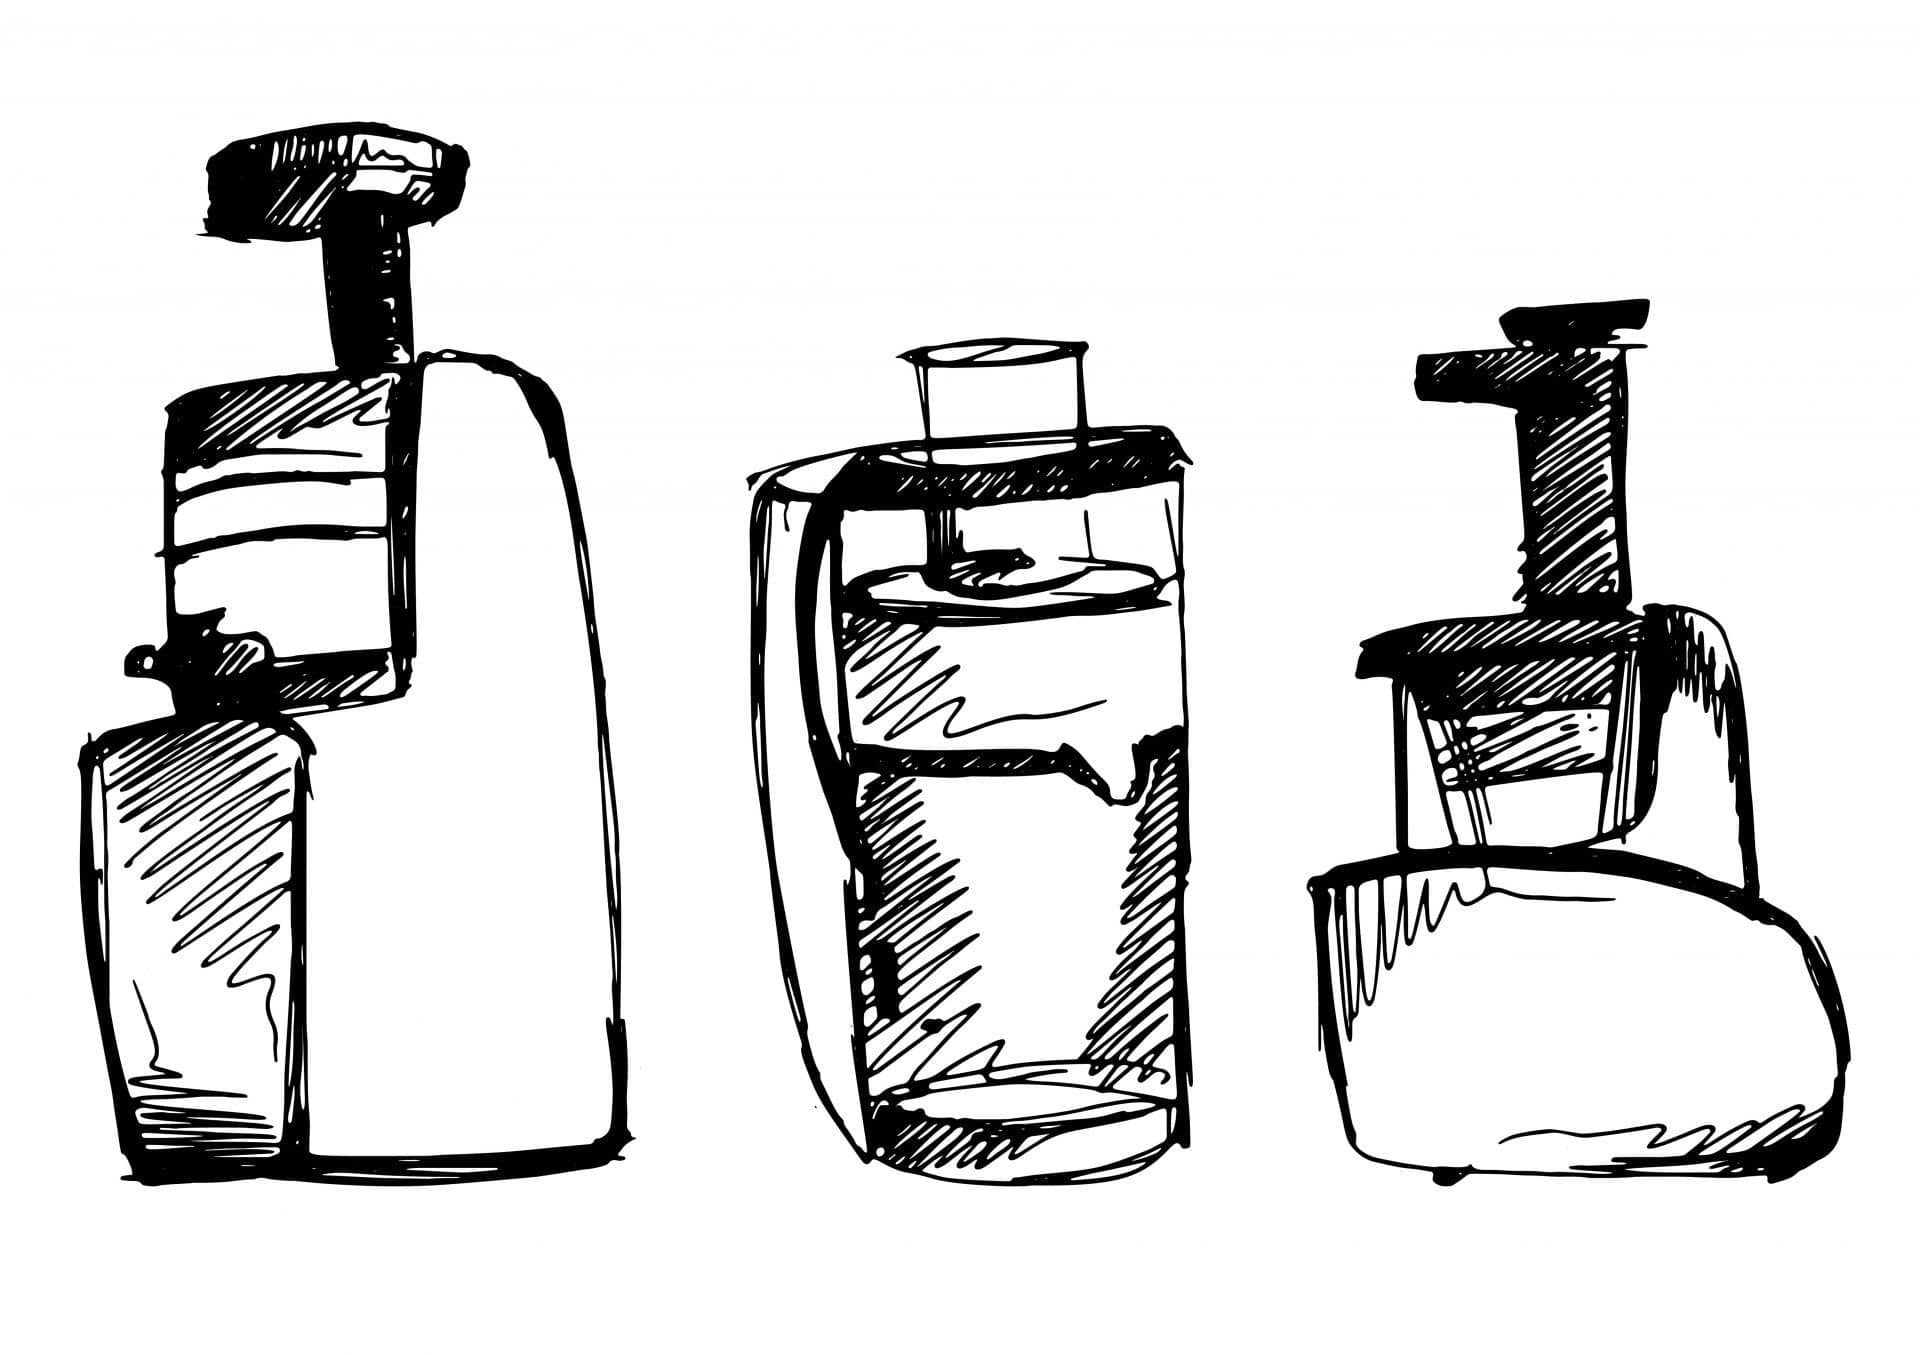 juicer vector sketch illustration